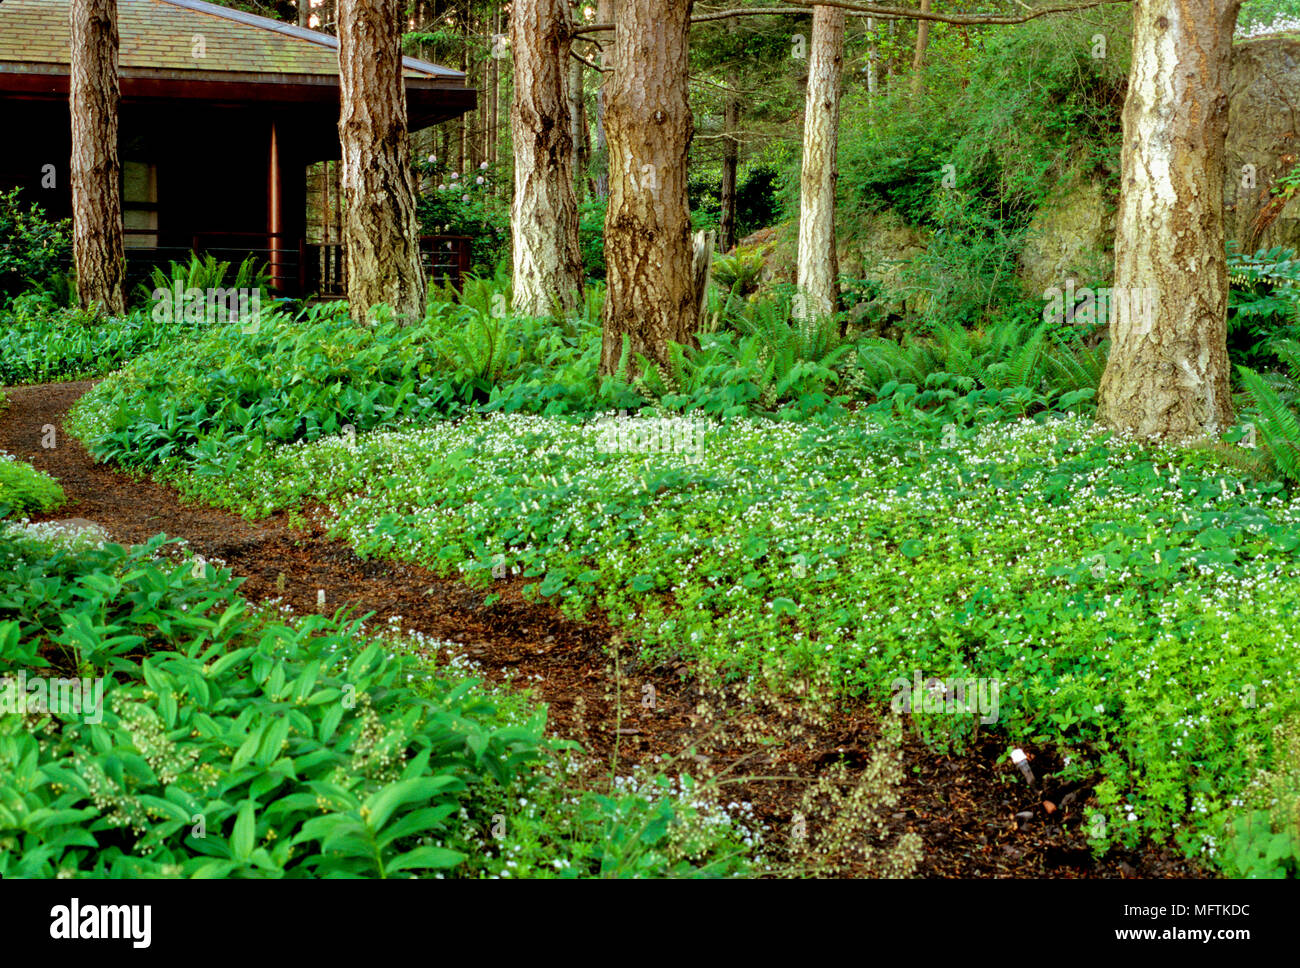 Woodland garden with plantings of Galium odoratum, Smilacina stellata, Maianthemum dilatum and Polystichum munitum Stock Photo